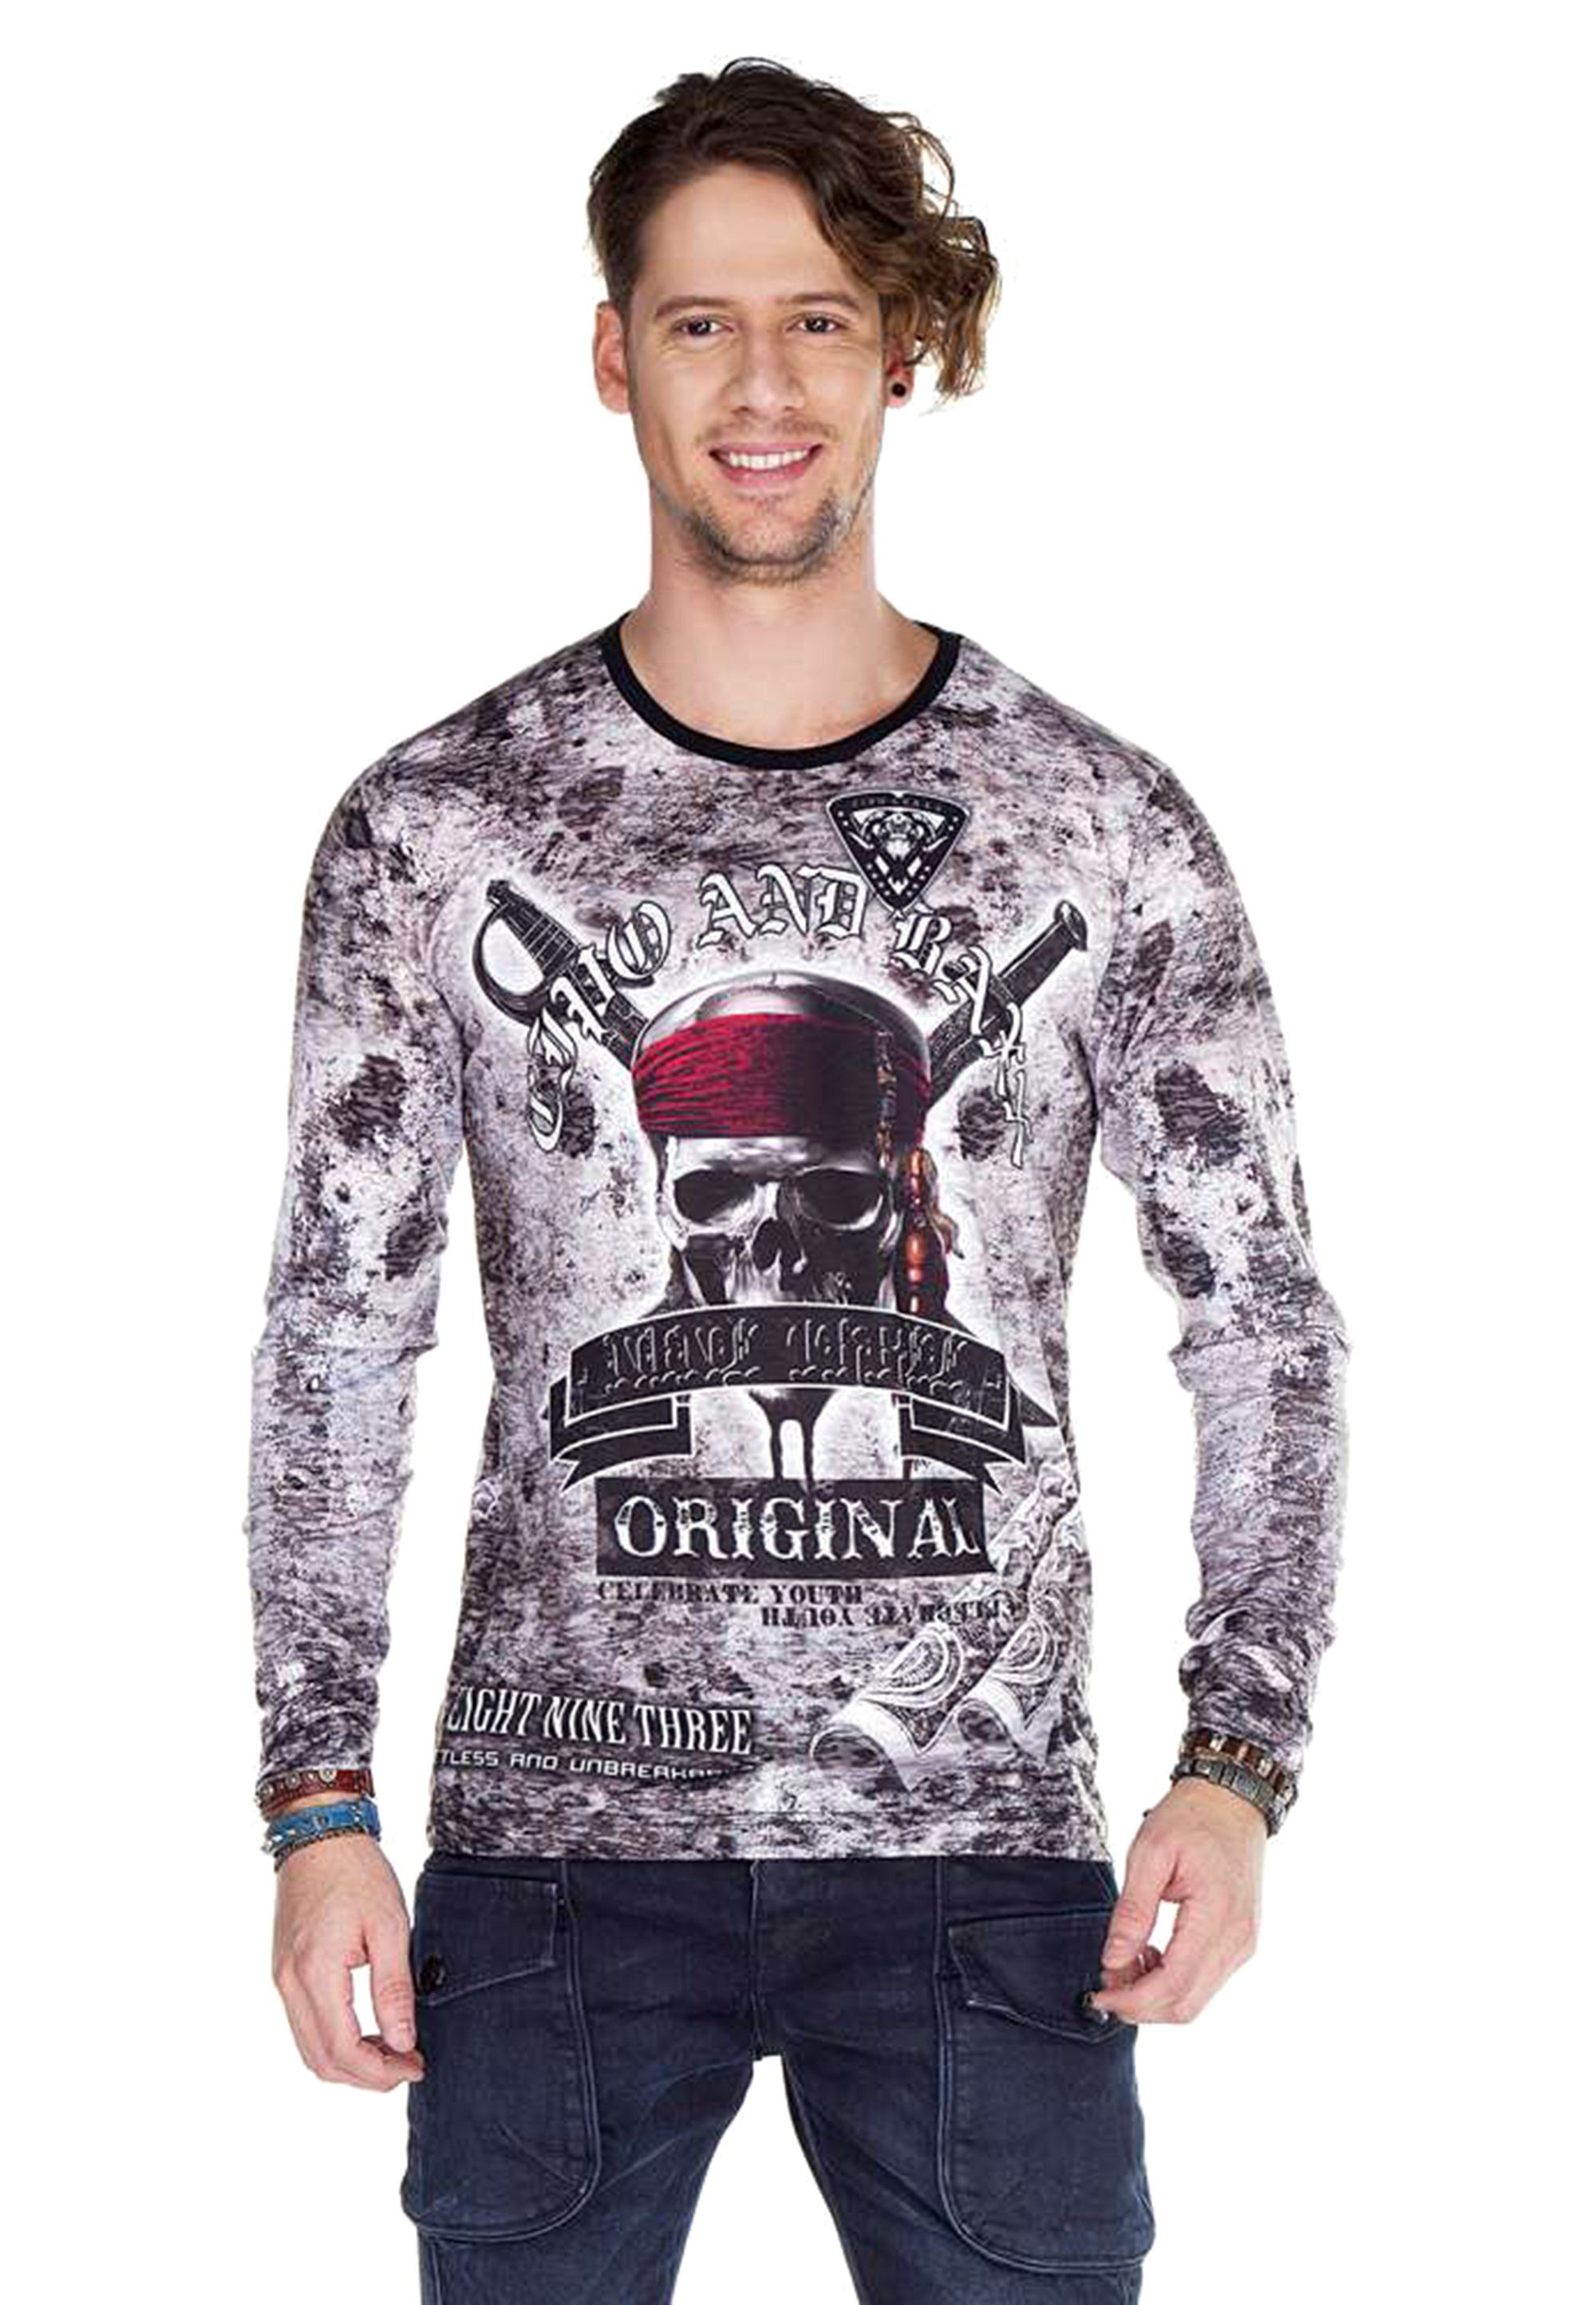 Cipo & stylischem Baxx Sweatshirt mit Allover-Print